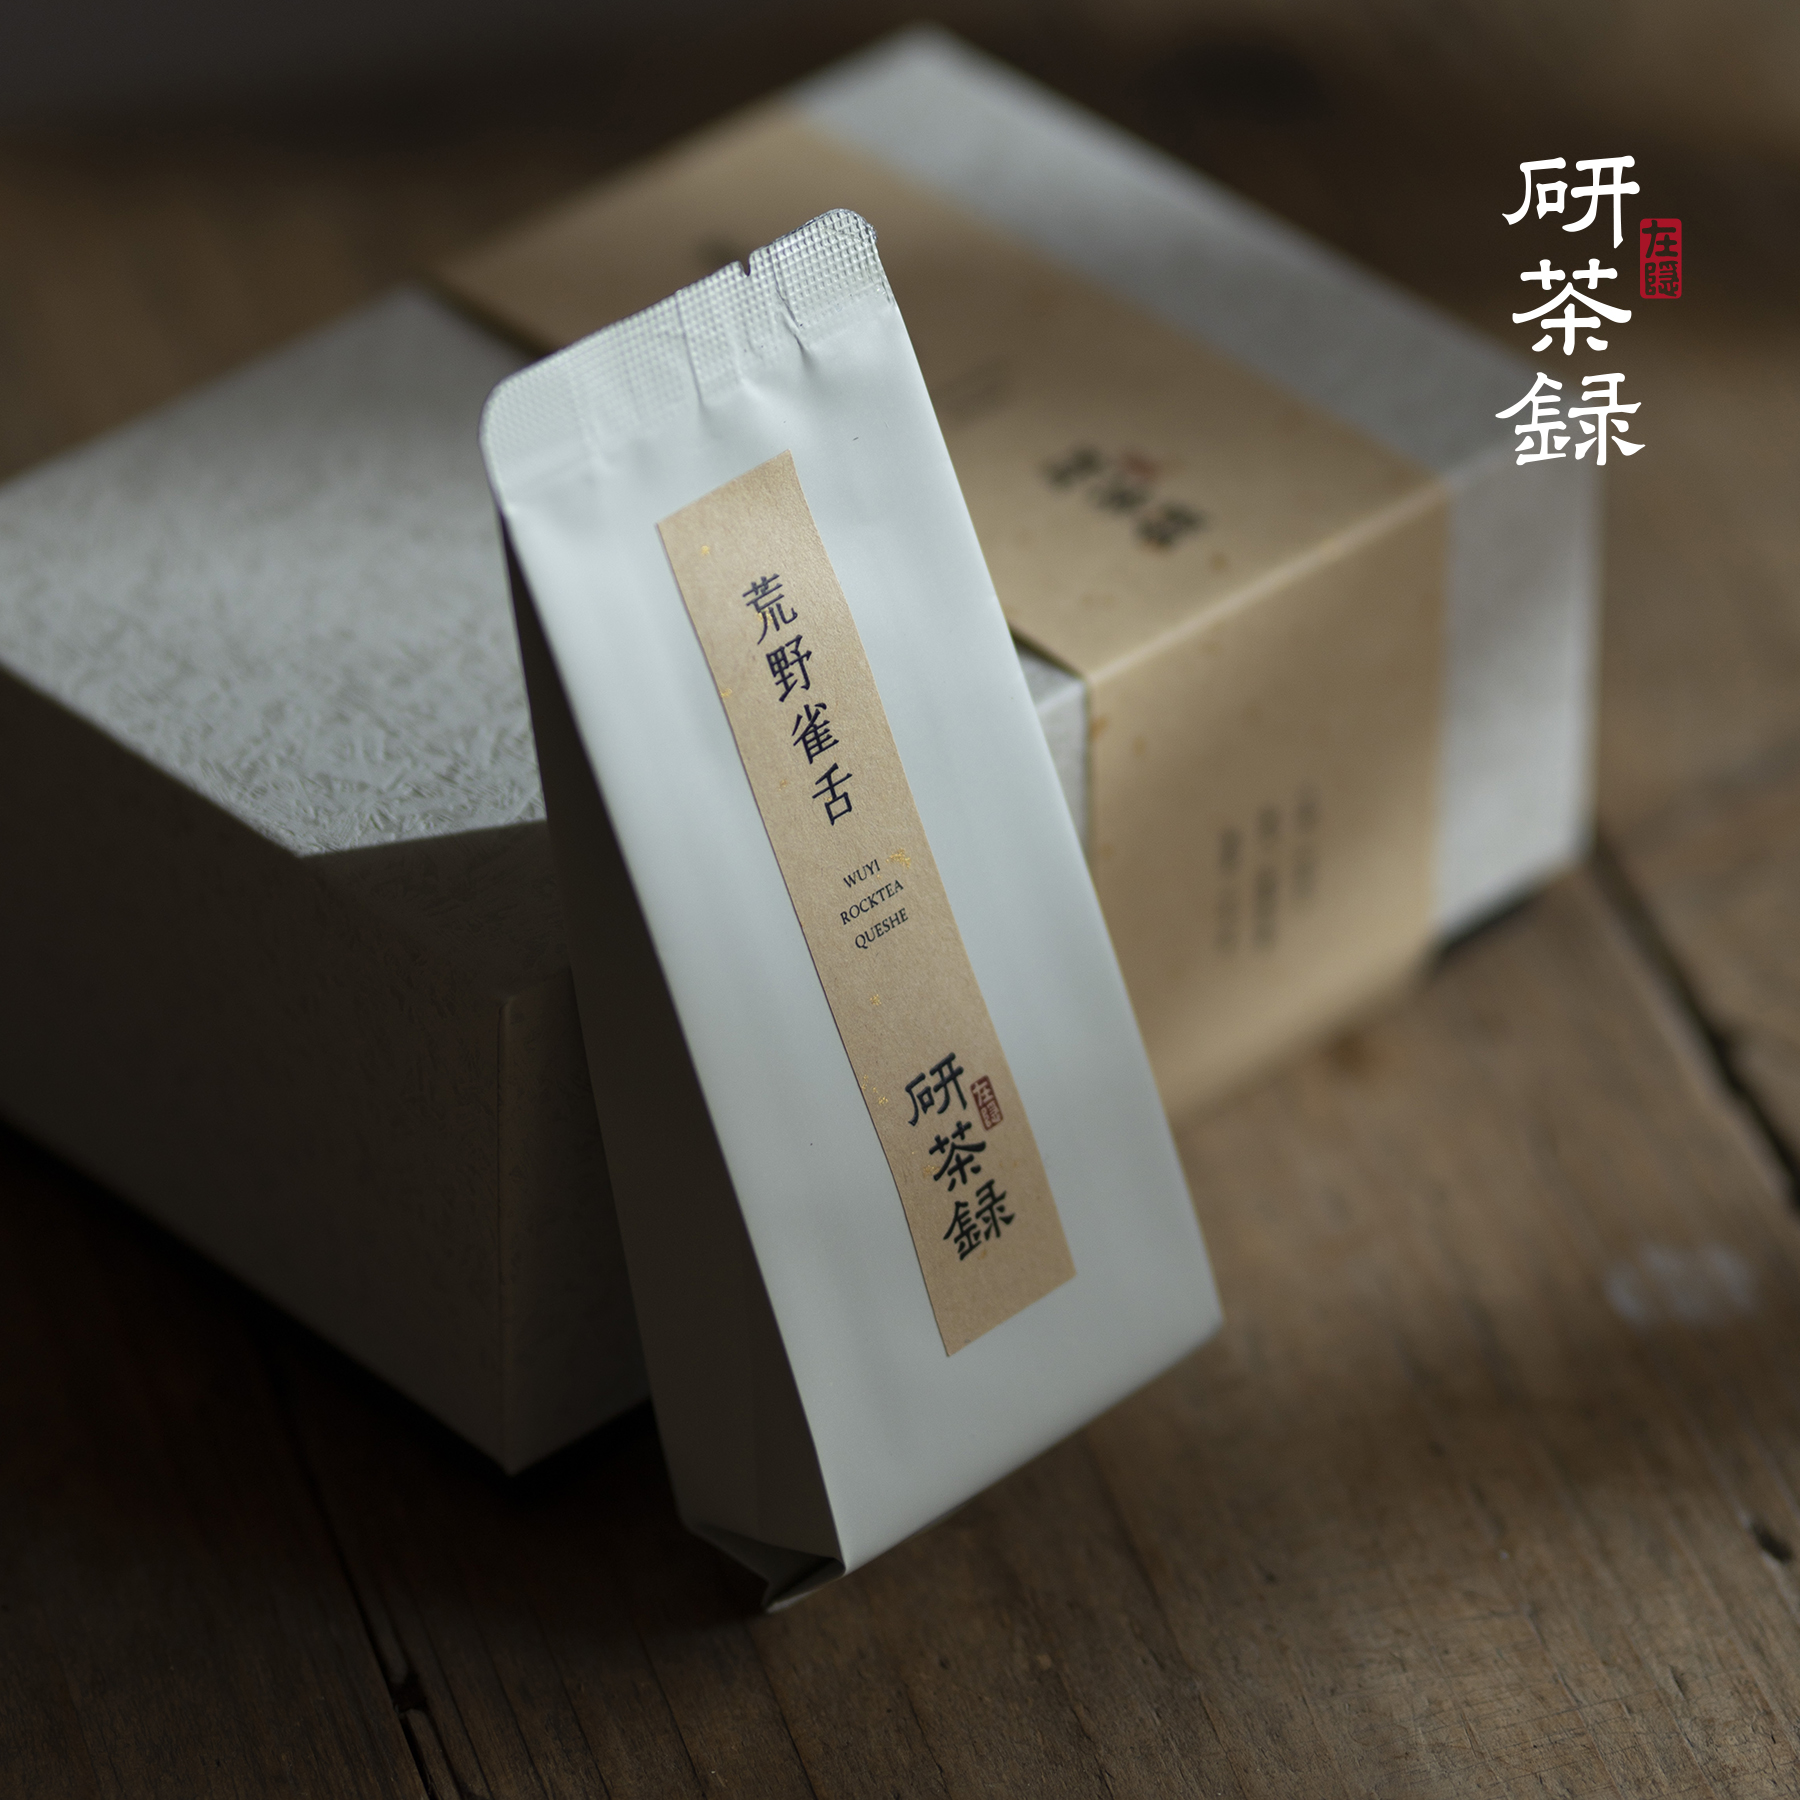 雀舌 岩茶小品种 花香型 大红袍 武夷岩茶 在隐 研茶录